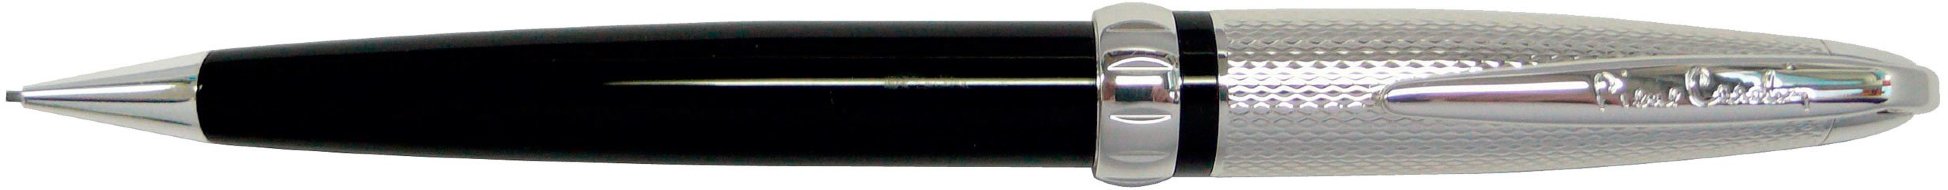 Механический карандаш Pierre Cardin Espace черный лак, никель